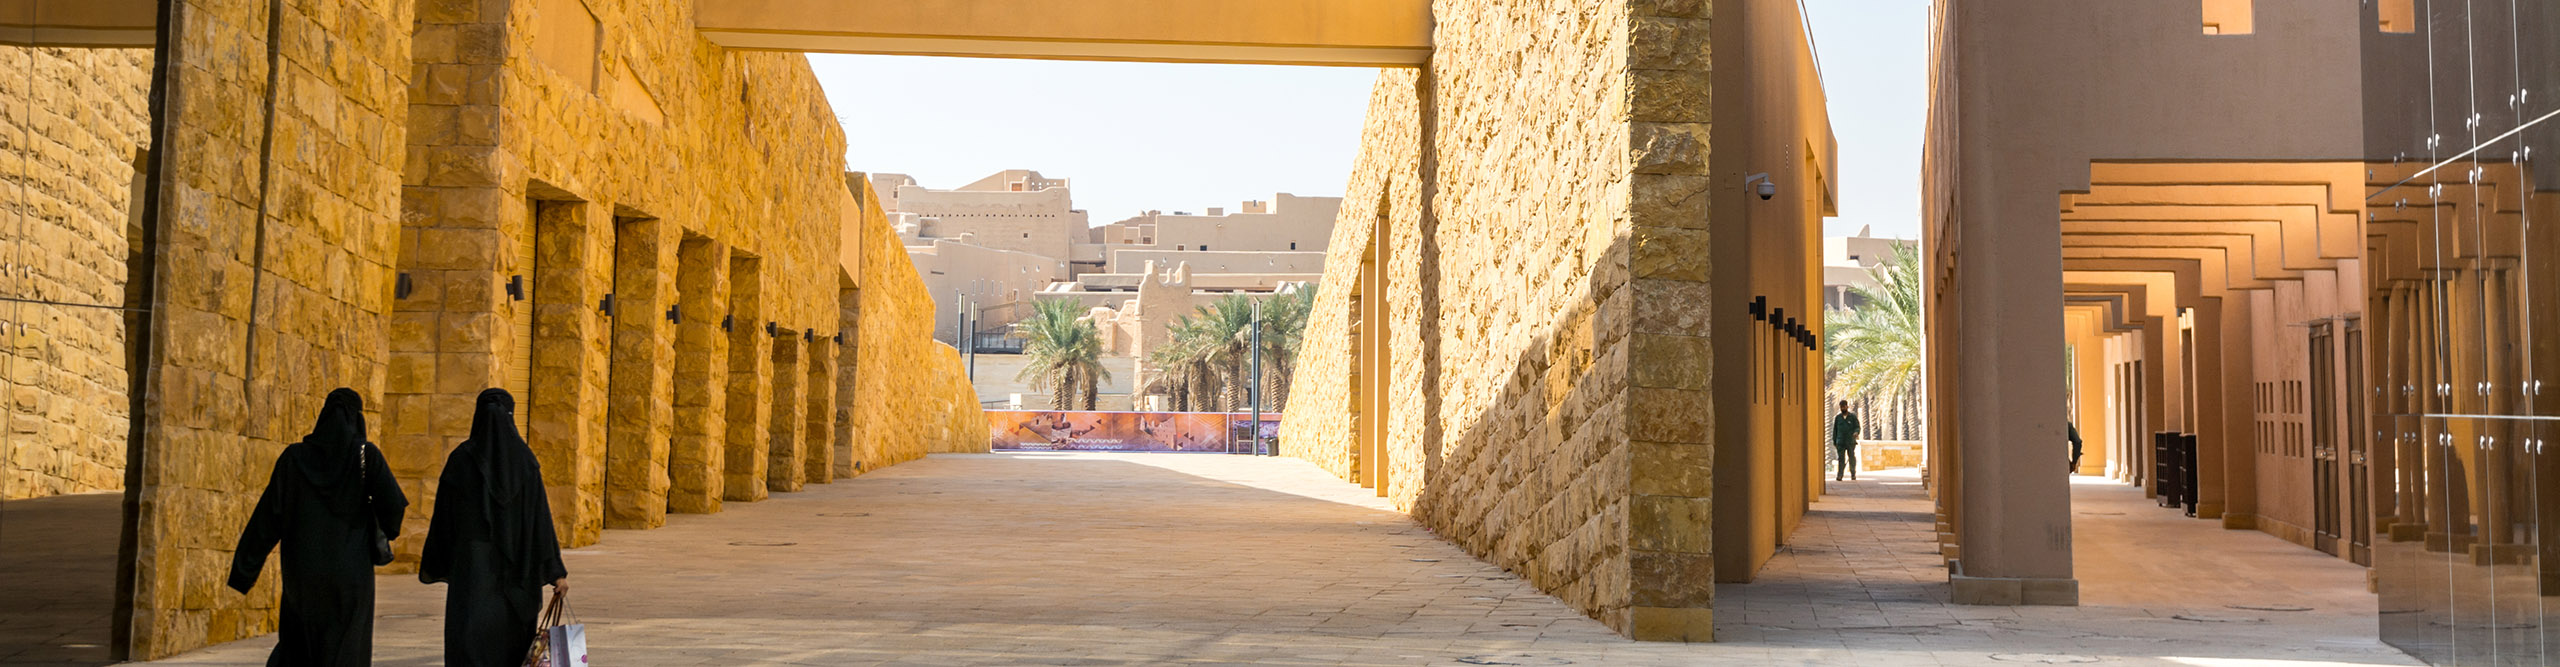 Arabic women walking in the Diraiyah, a town in Riyadh, Saudi Arabia, 